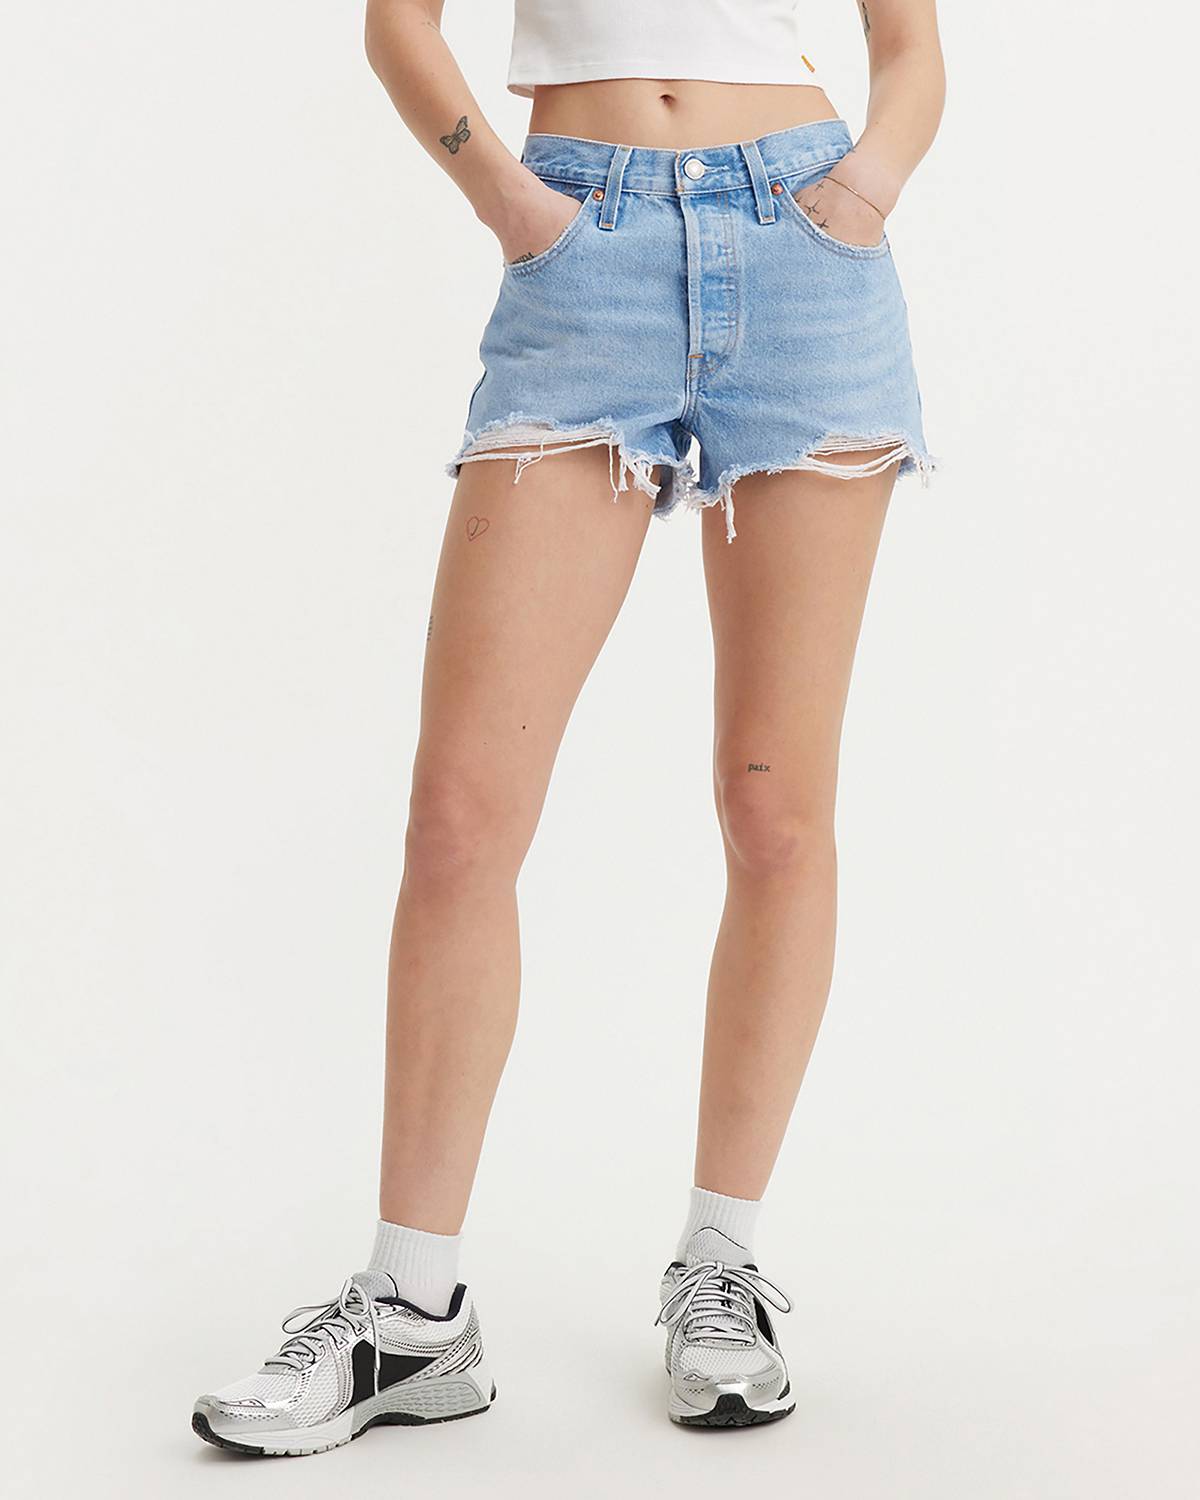 Female model wearing jean shorts.